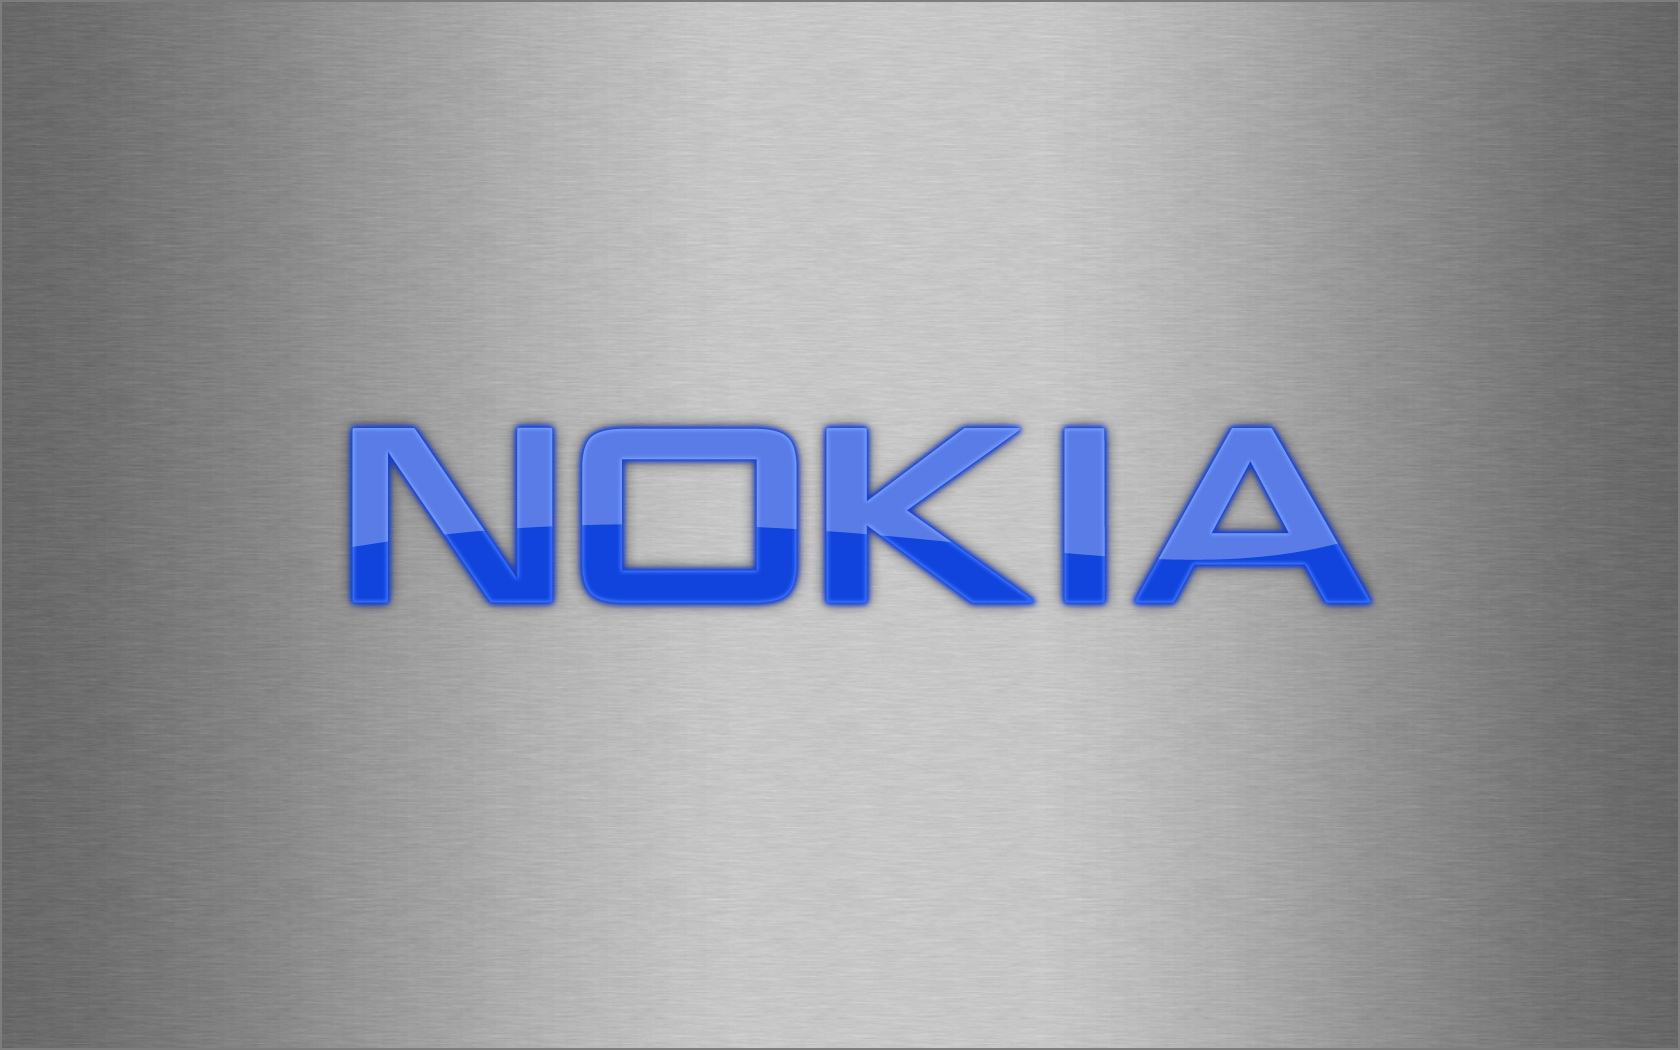 Nokia Wallpaper Logos